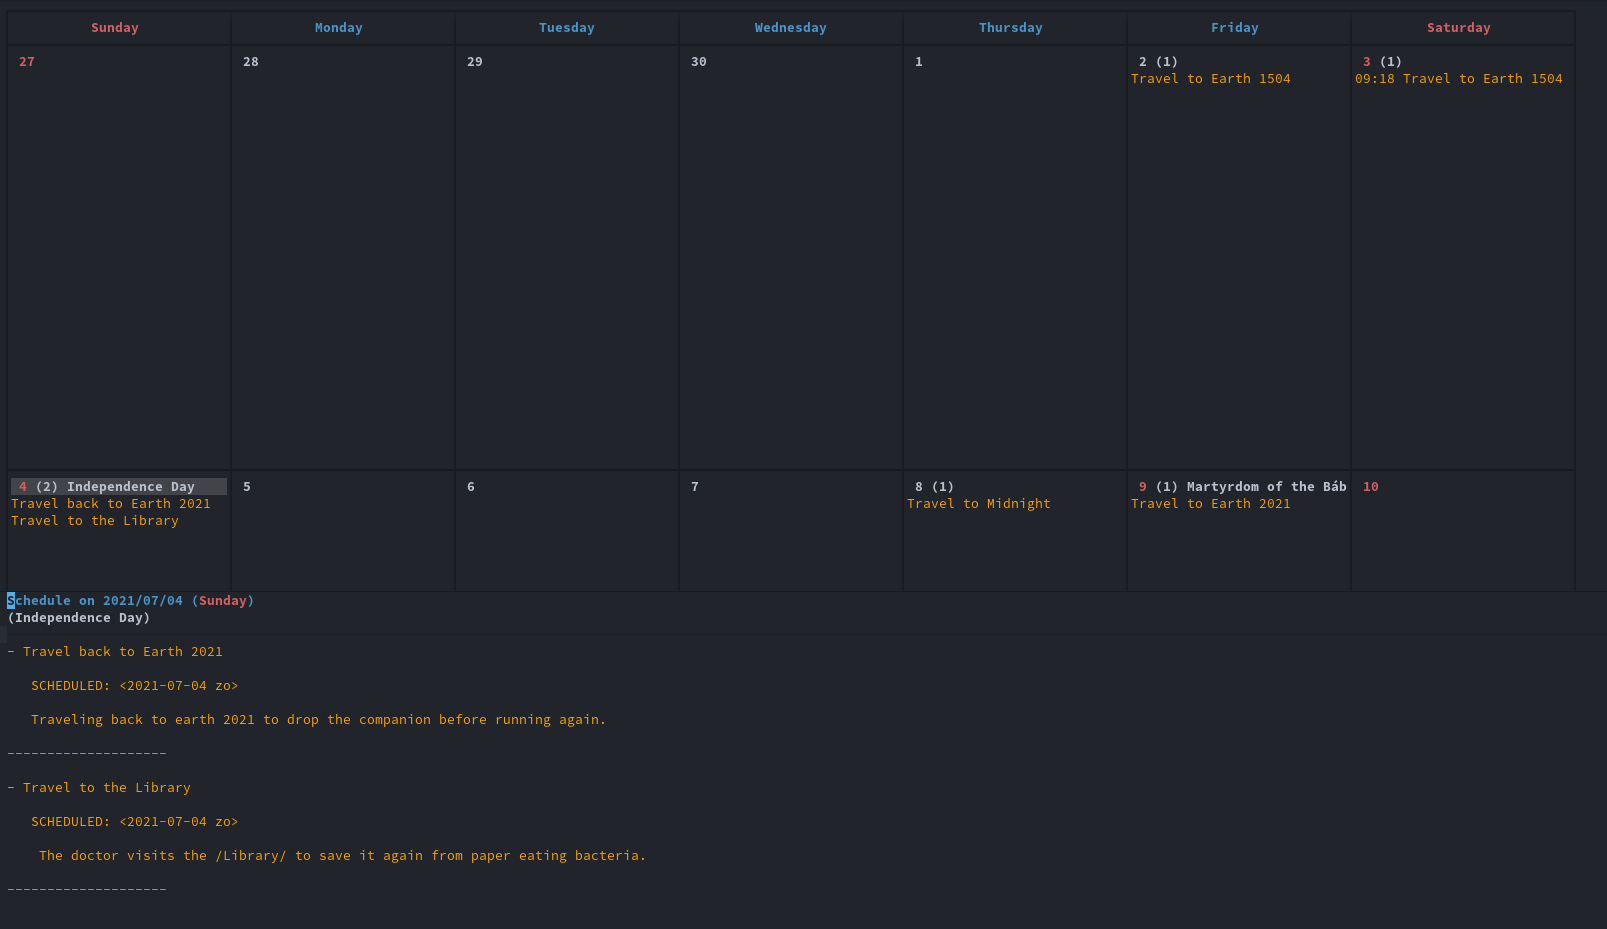 Figure 2: Calendar day overview